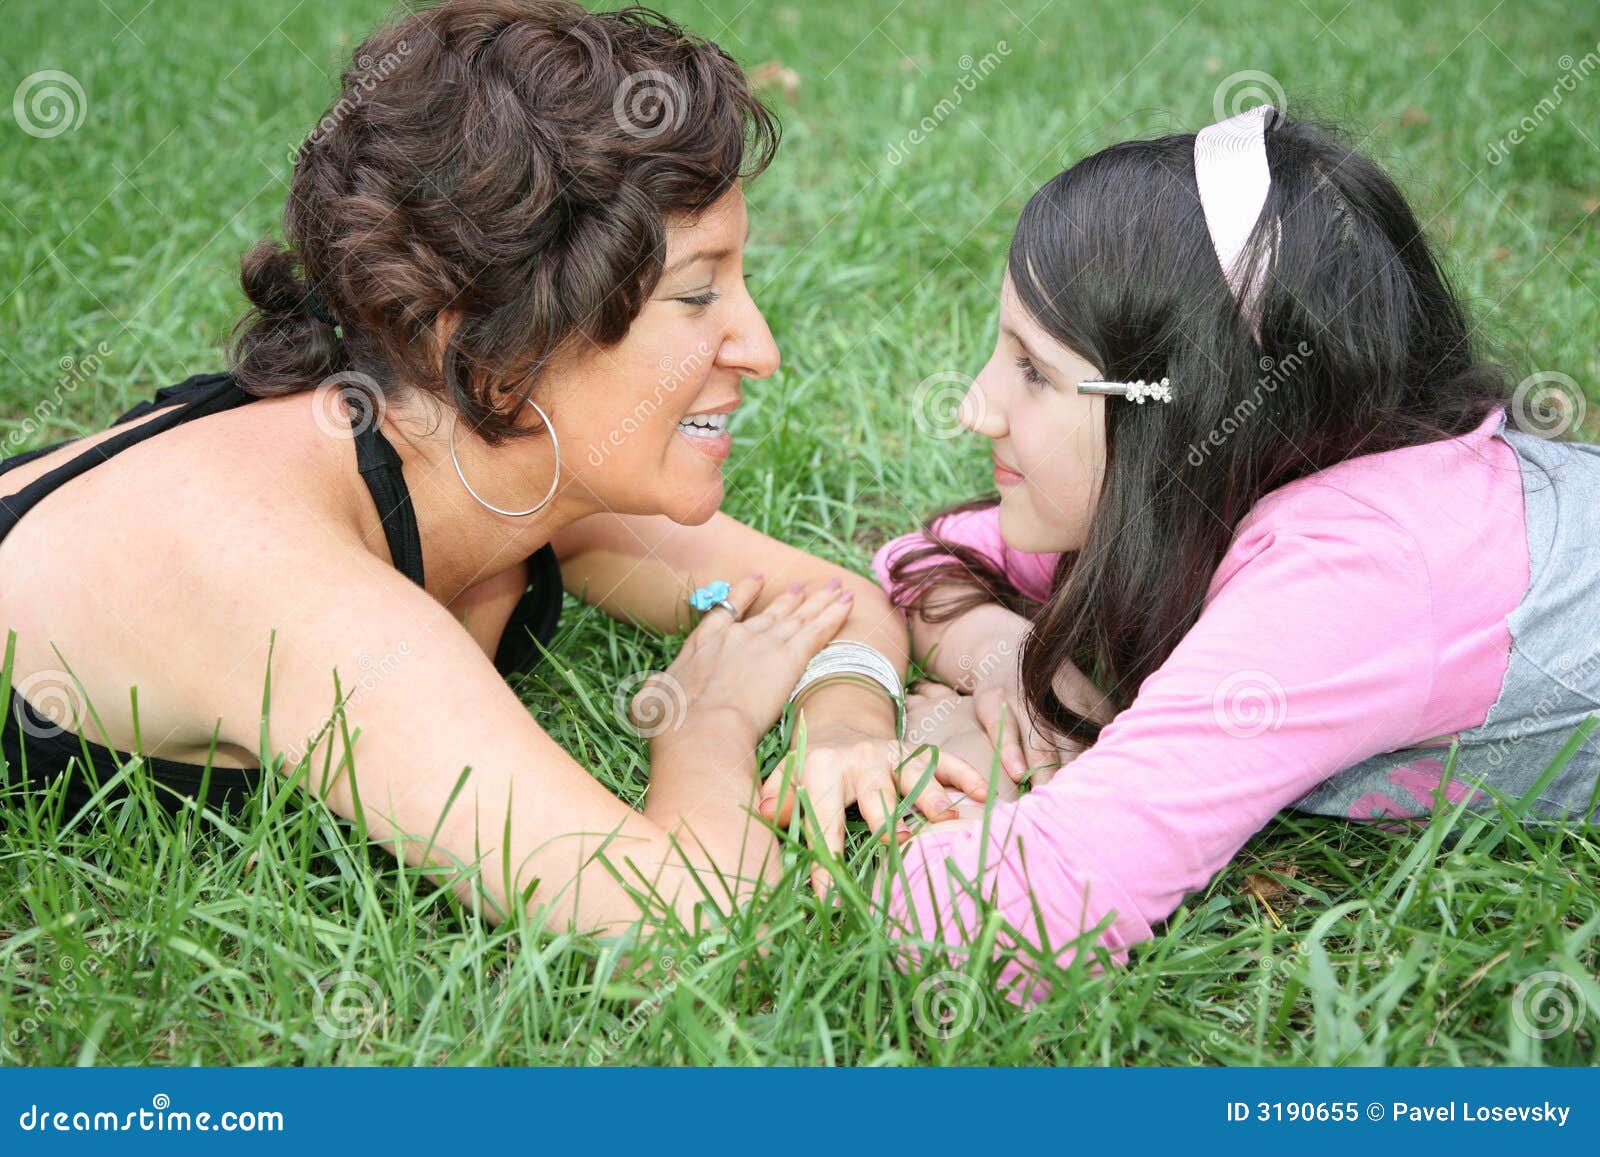 Лесбиянка мама девочка. Мать и дочь на траве. Дочка лежит на маме. Мама и дочка лесбиянство. Фотосессия мама и дочь лизбиянка.